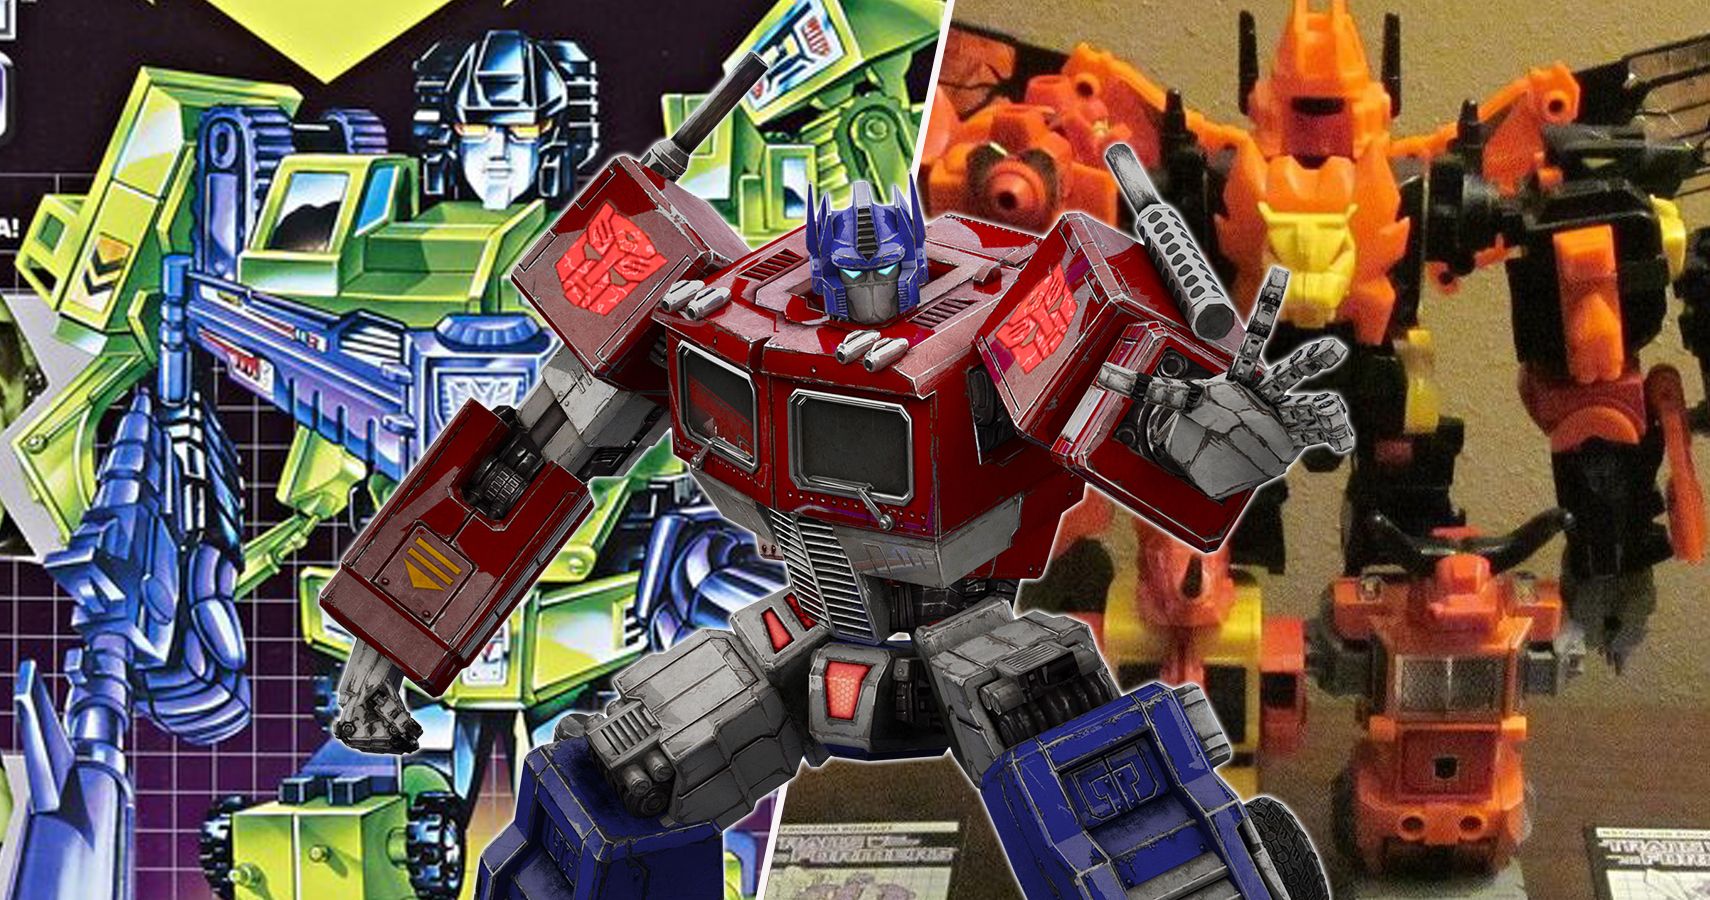 the original transformers toys